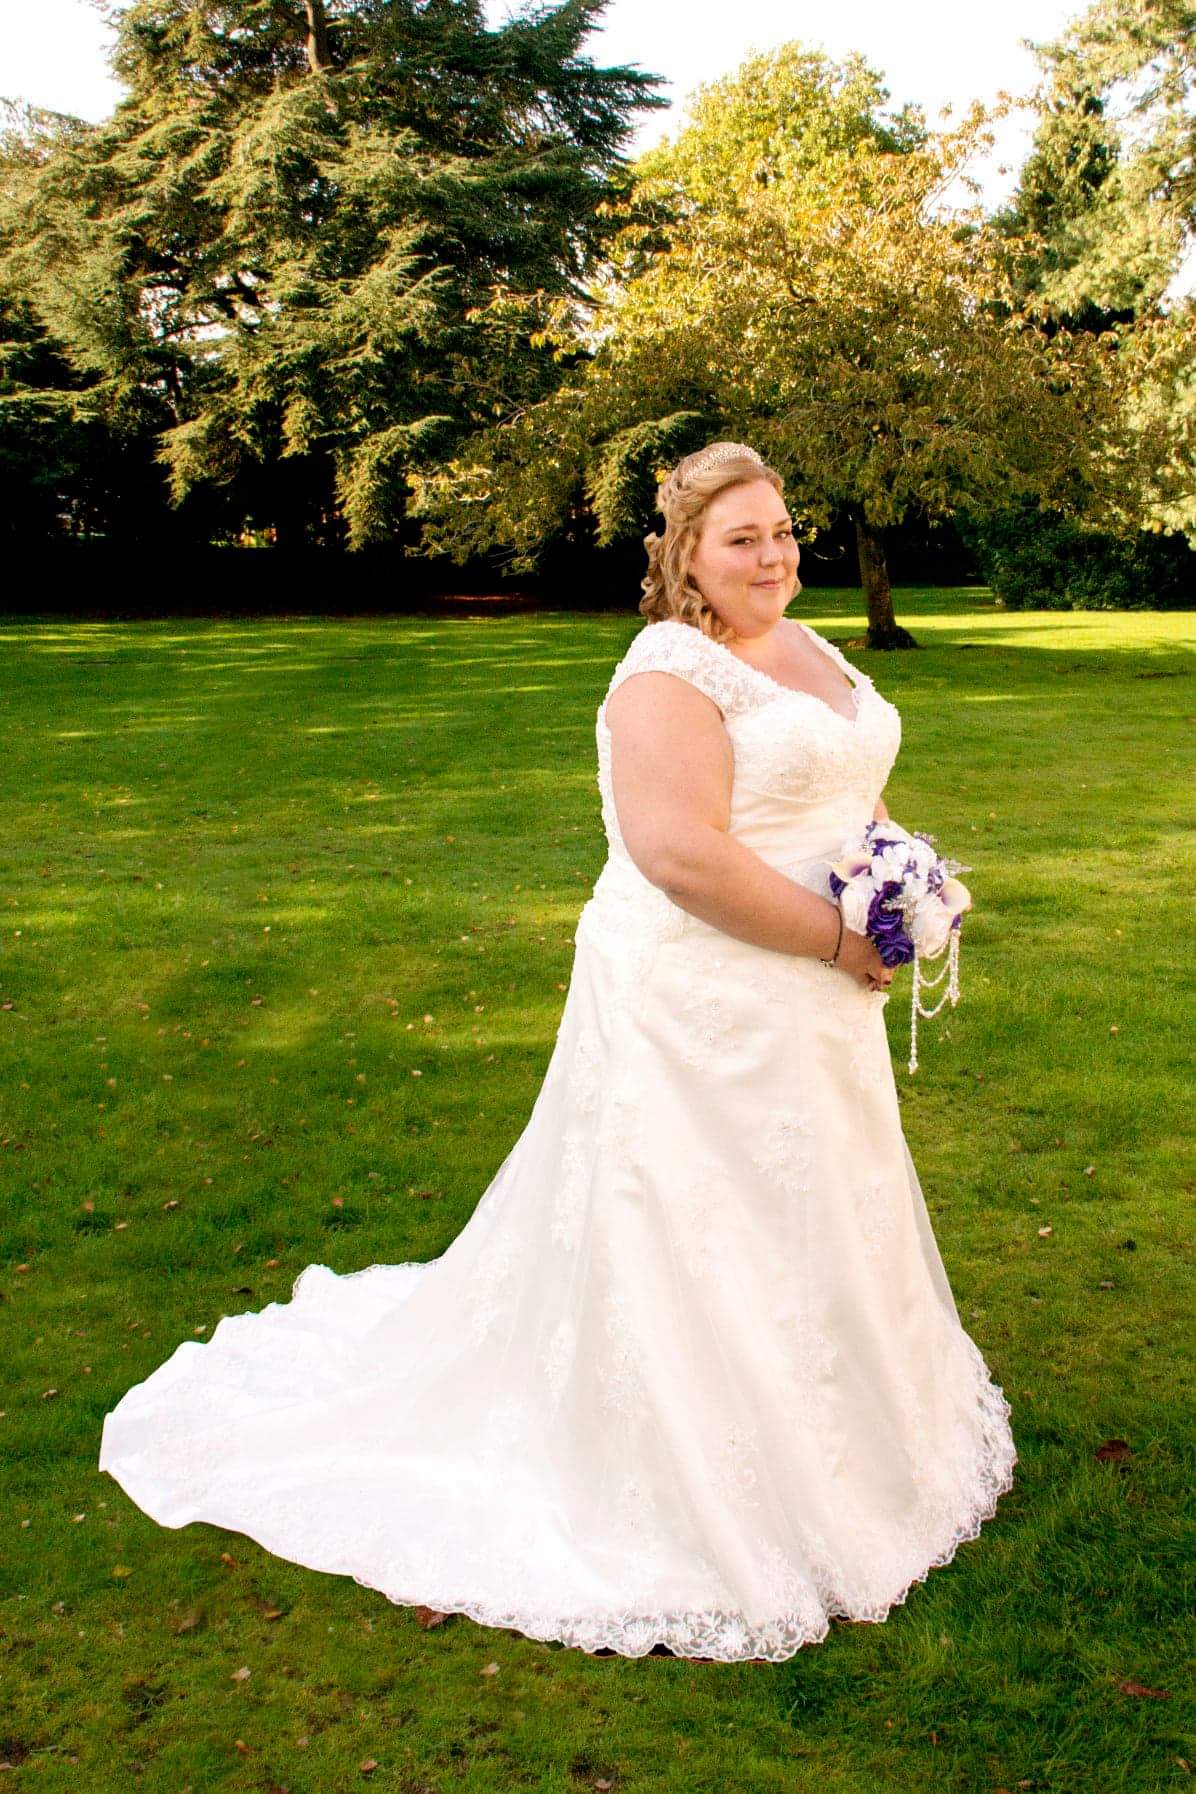 Stephanie Paine in her wedding dress